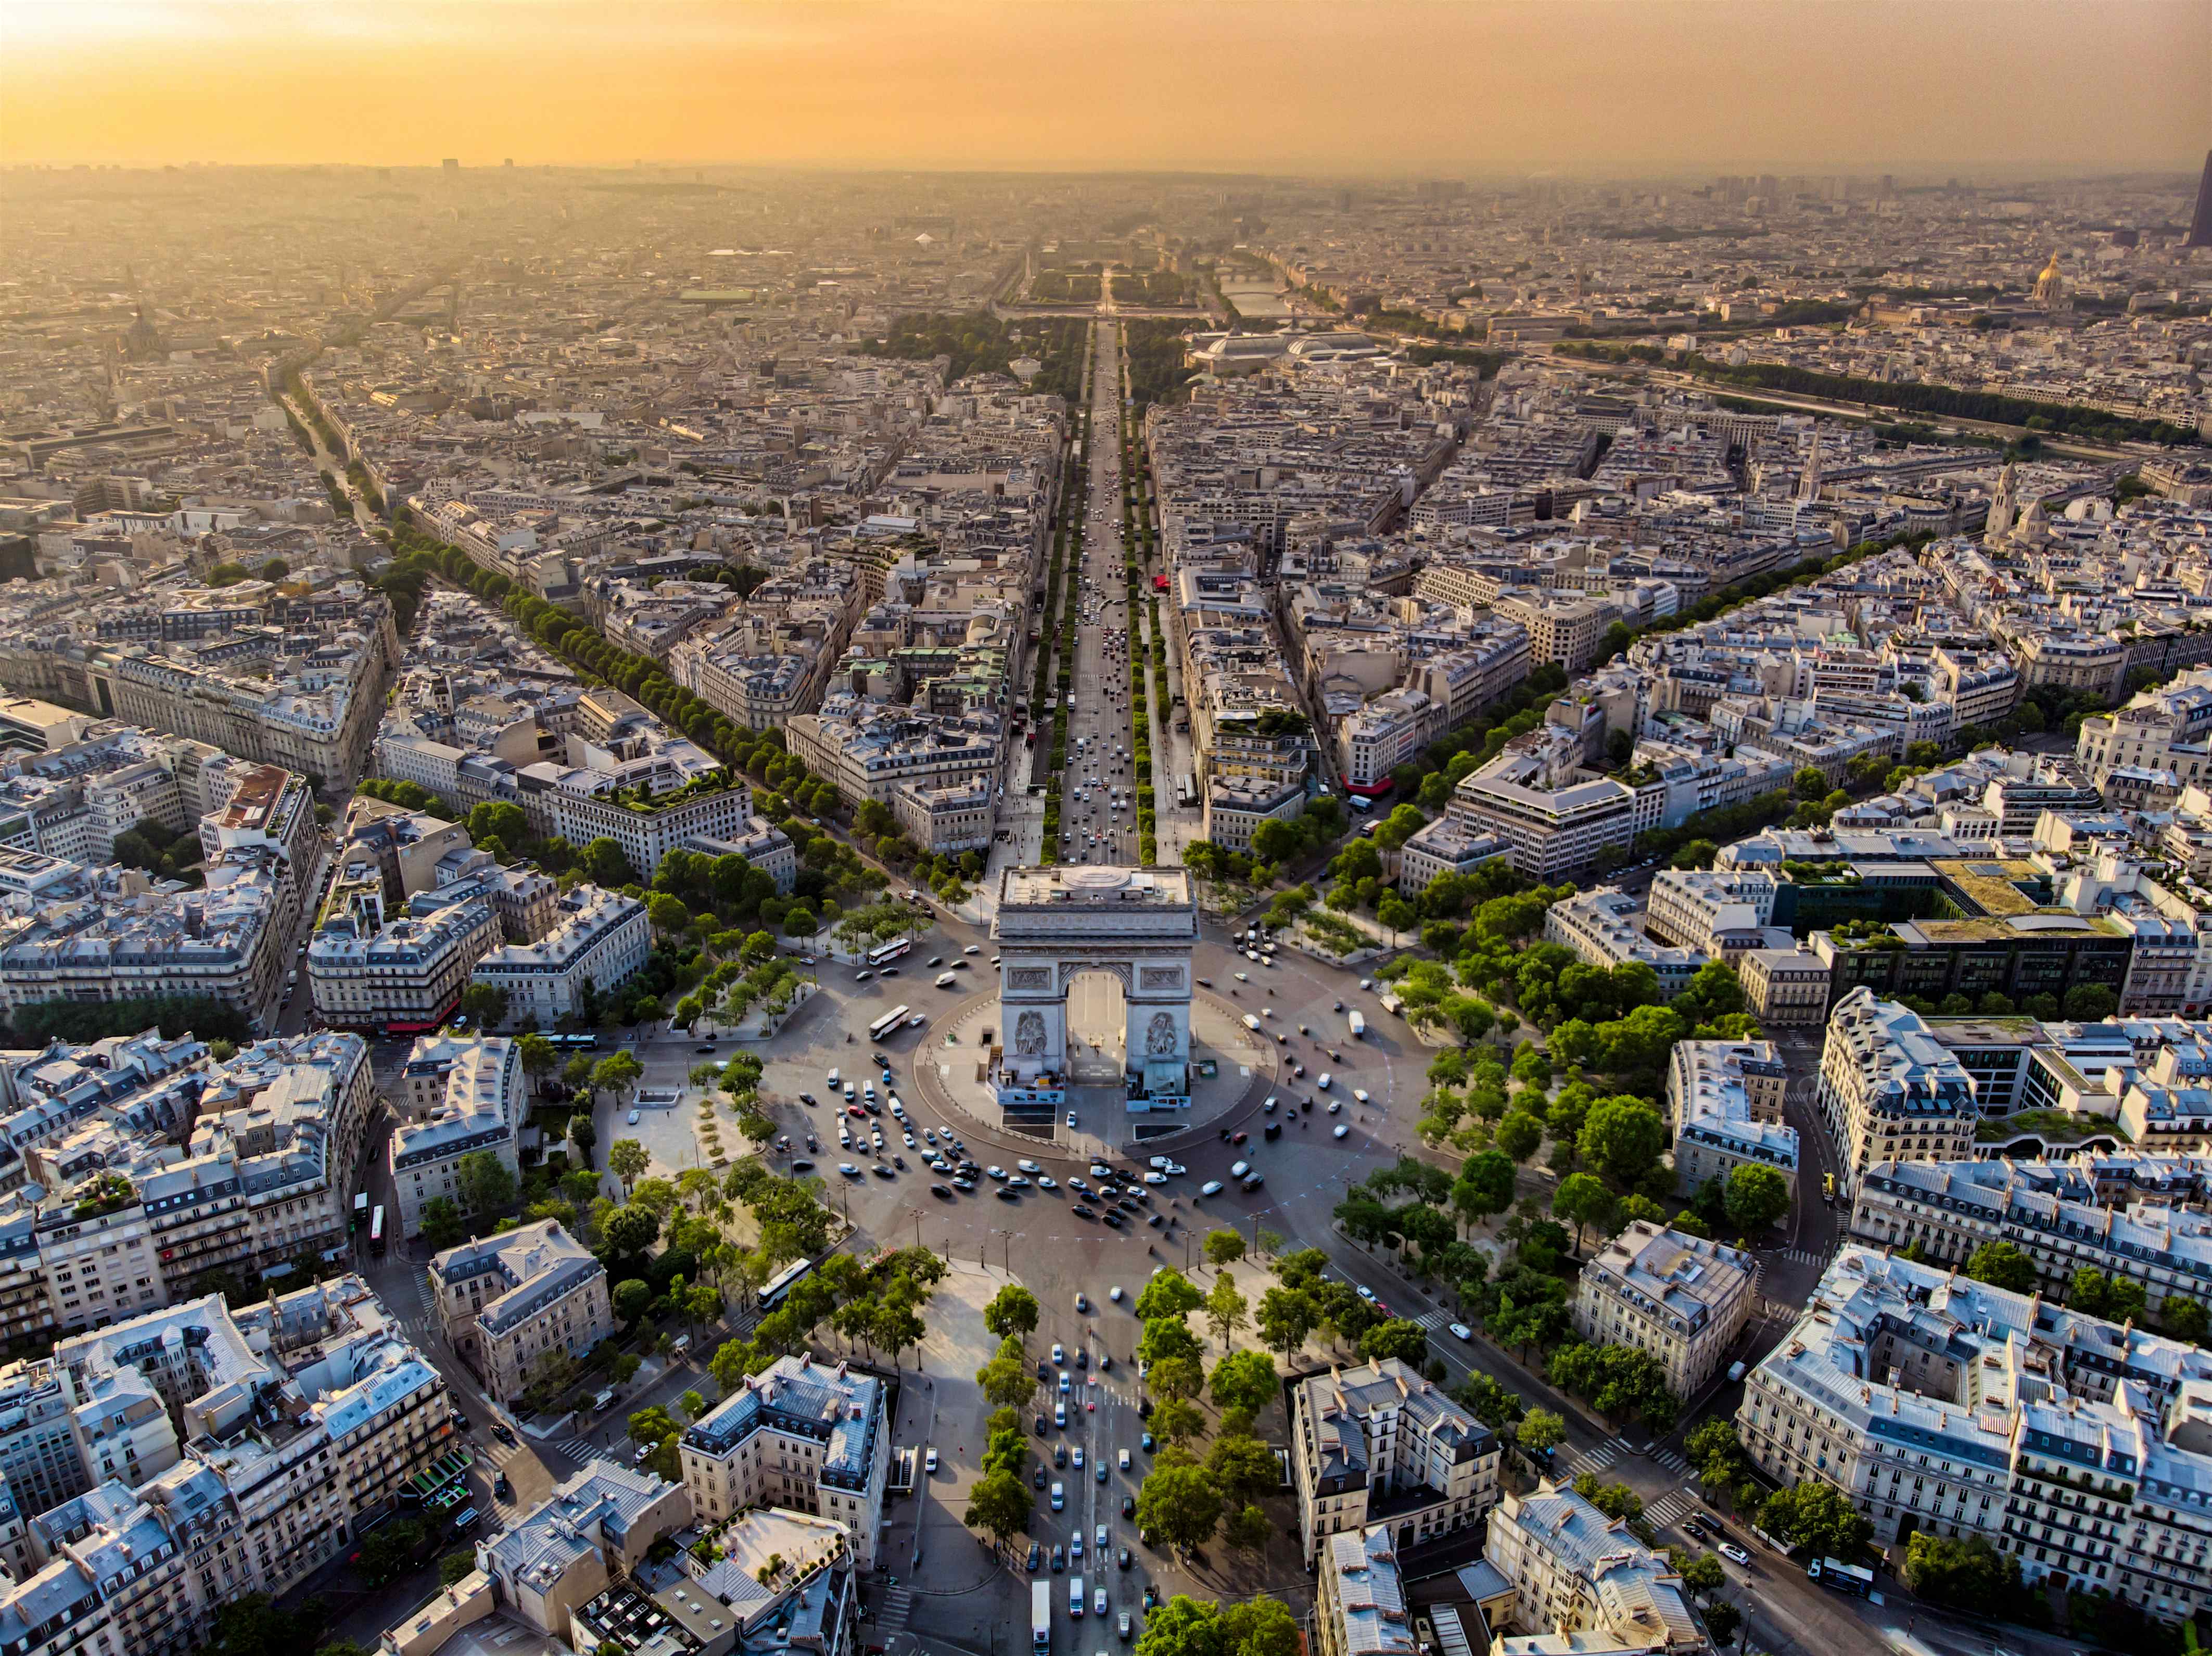 Arc de Triomphe | Paris, France Attractions - Lonely Planet